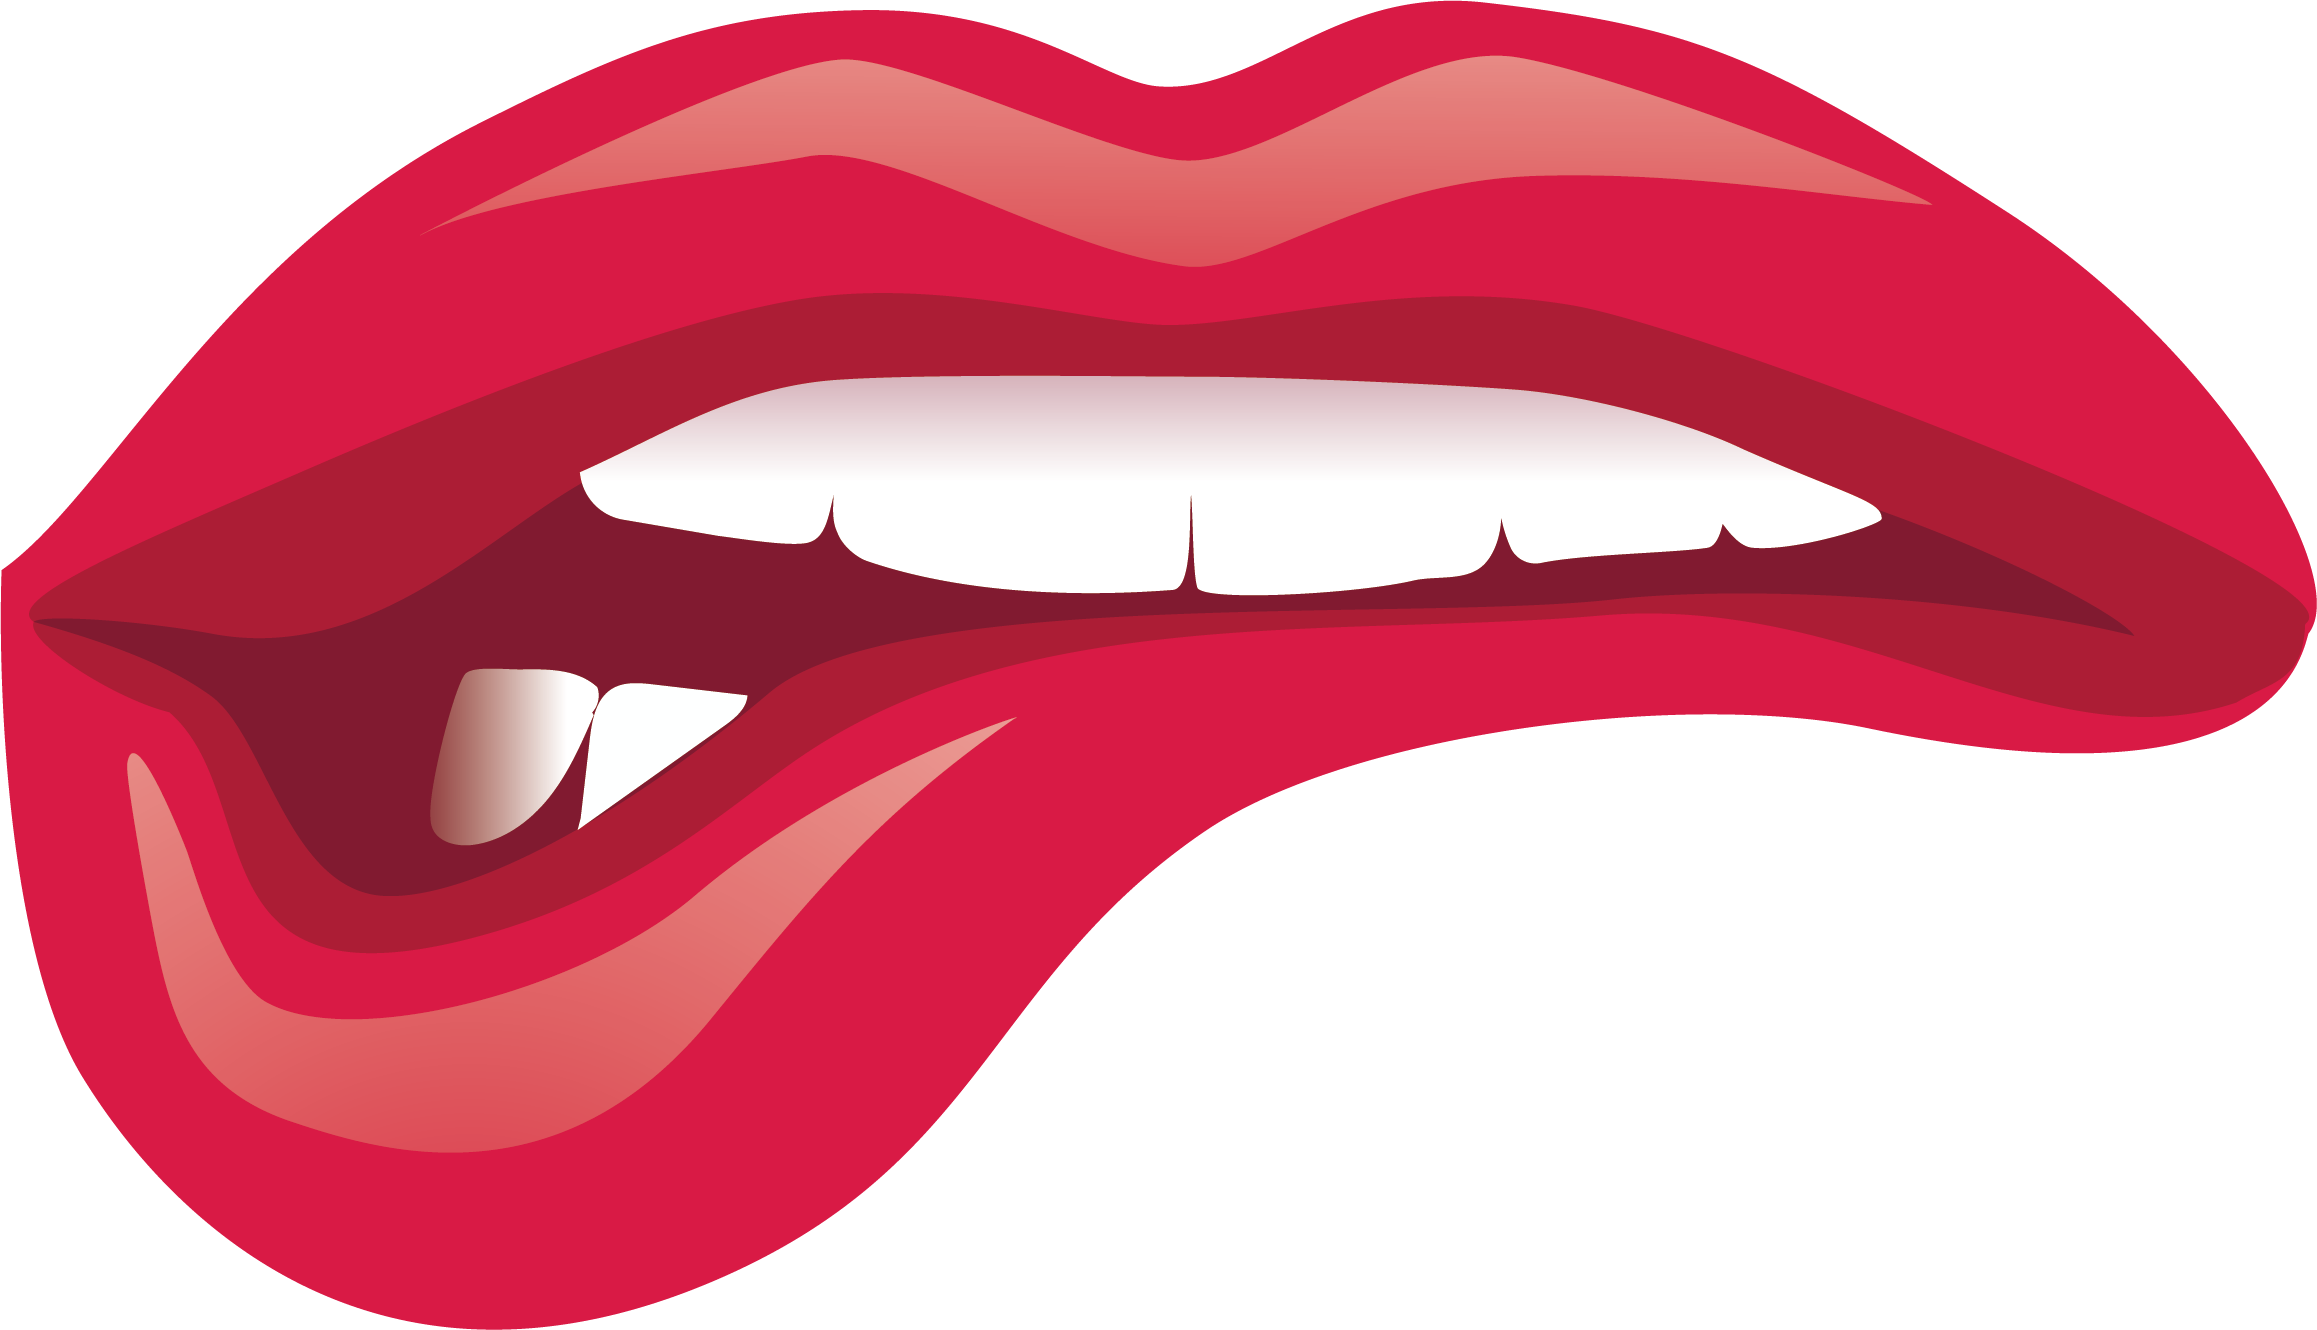 Lip Kiss Cartoon - Pretty cartoon lips png download - 2317*1330 - Free ...